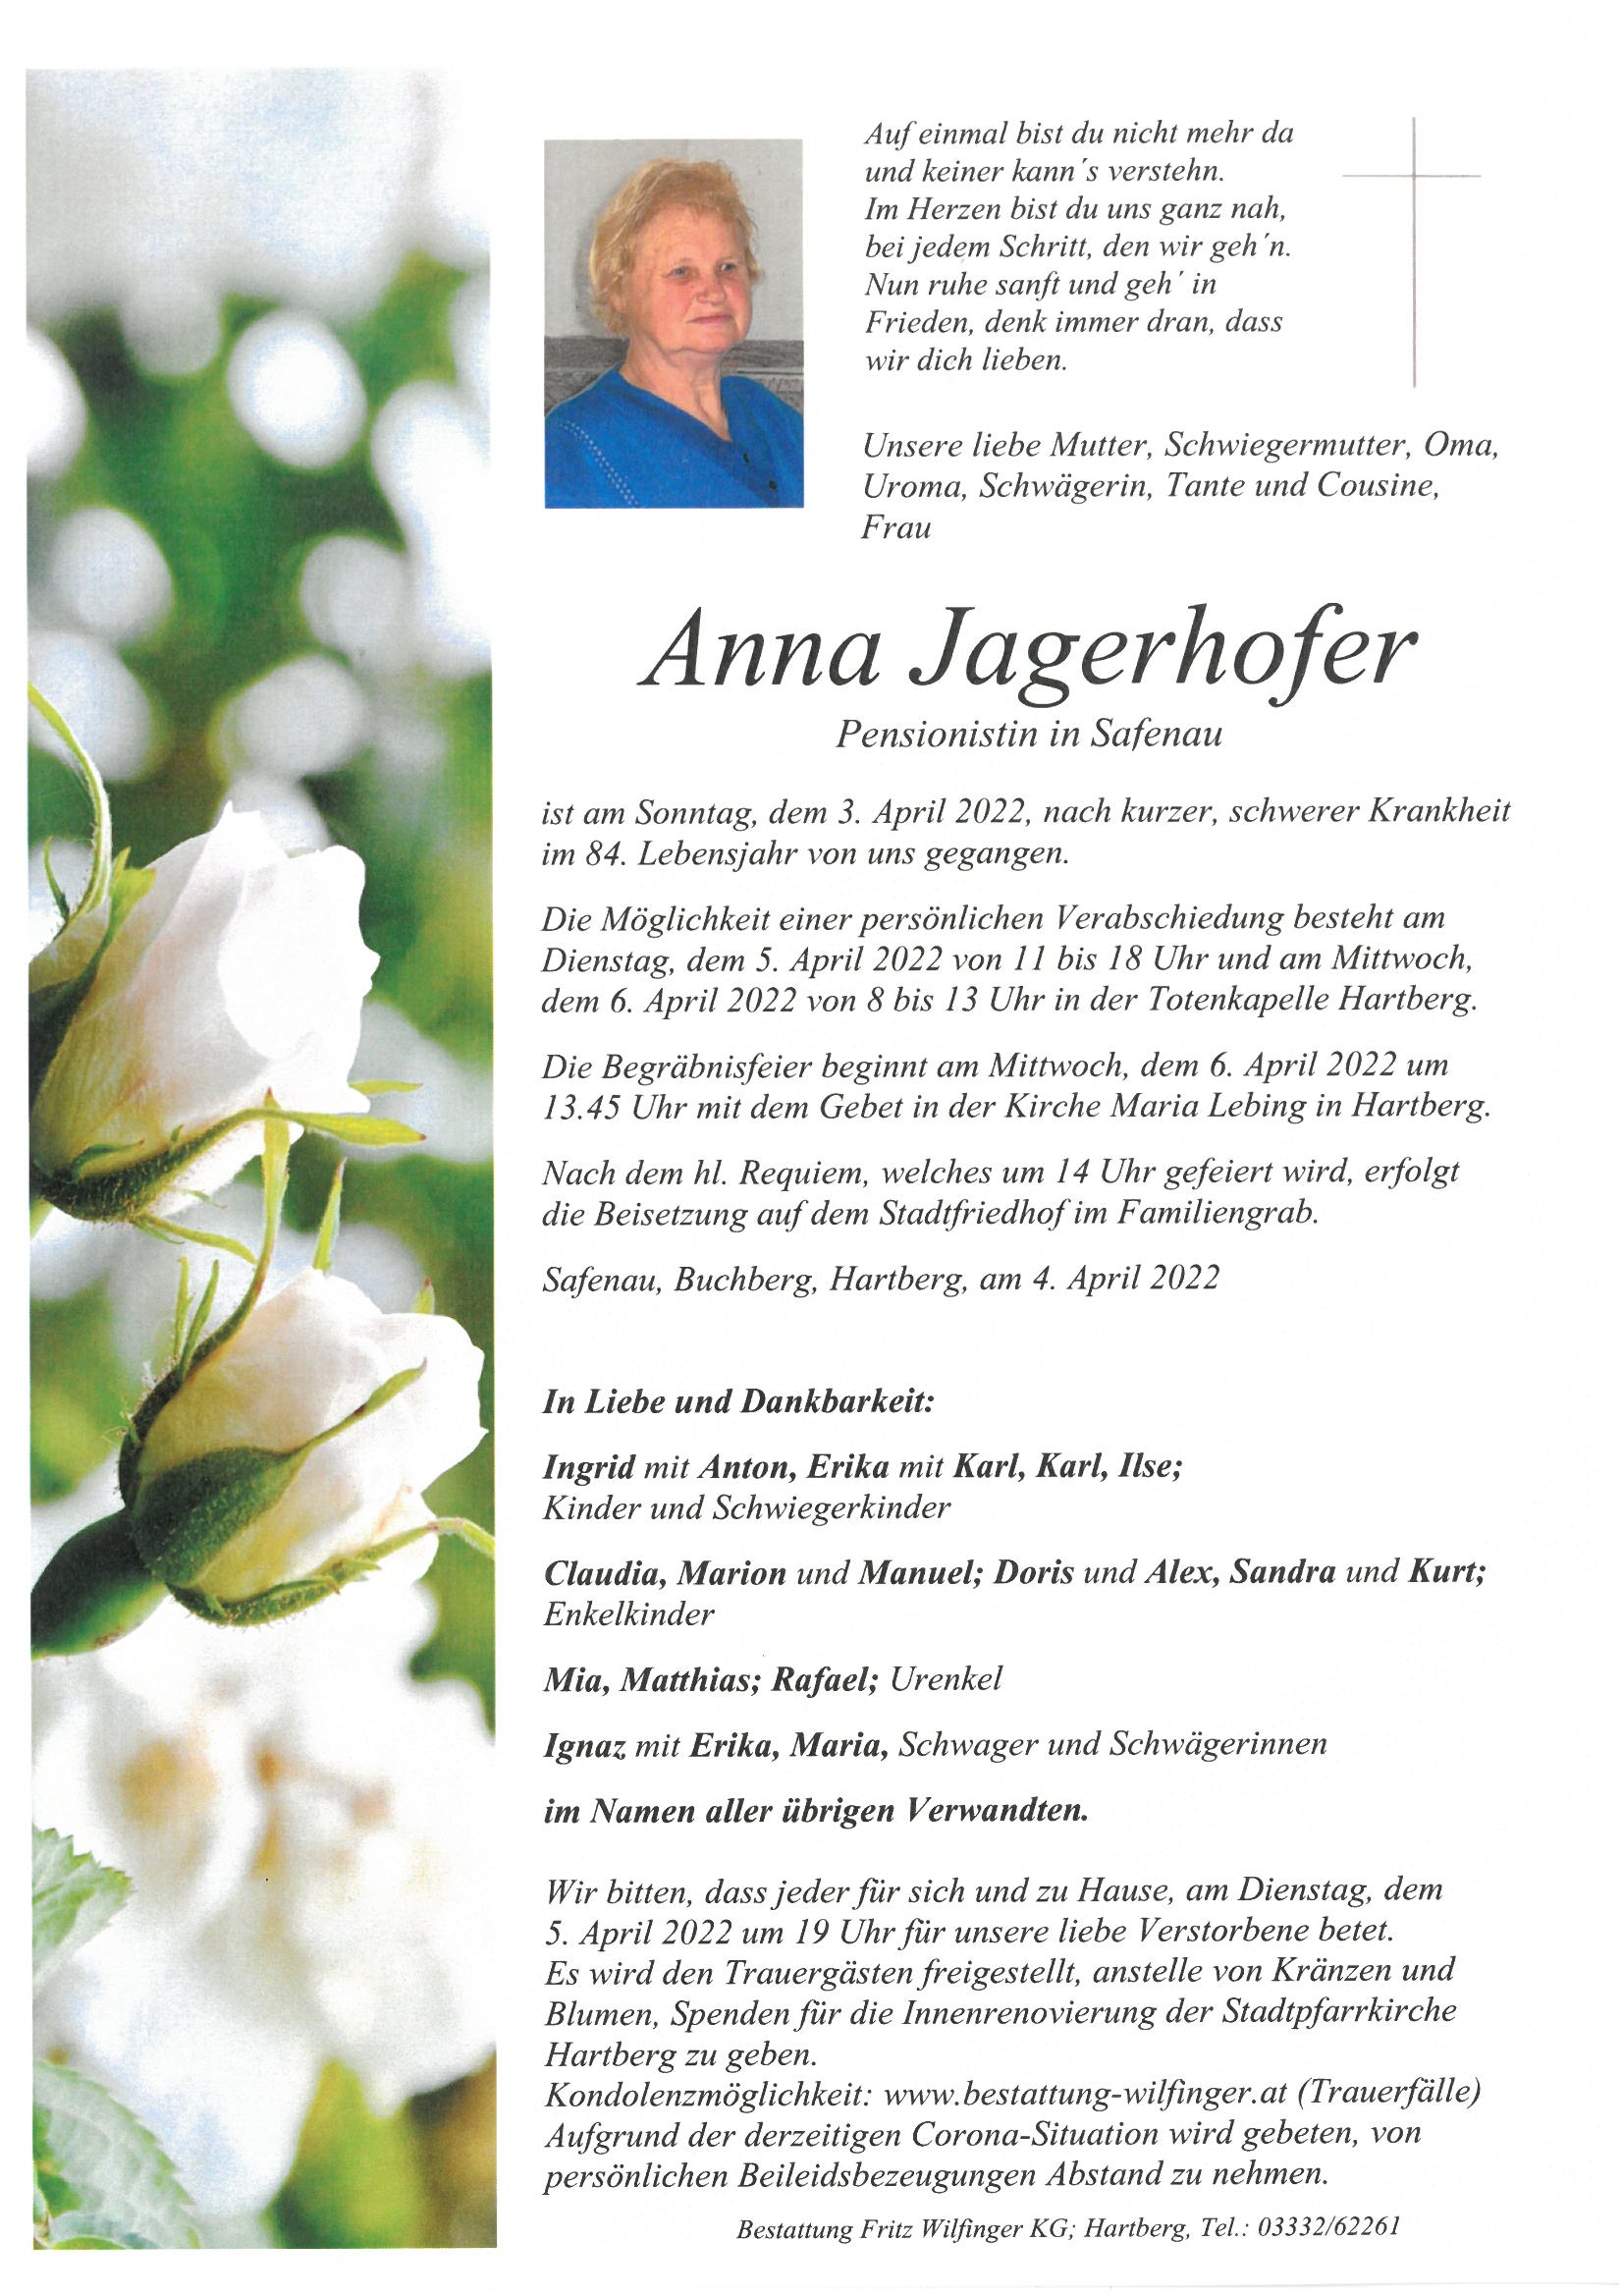 Anna Jagerhofer, Safenau